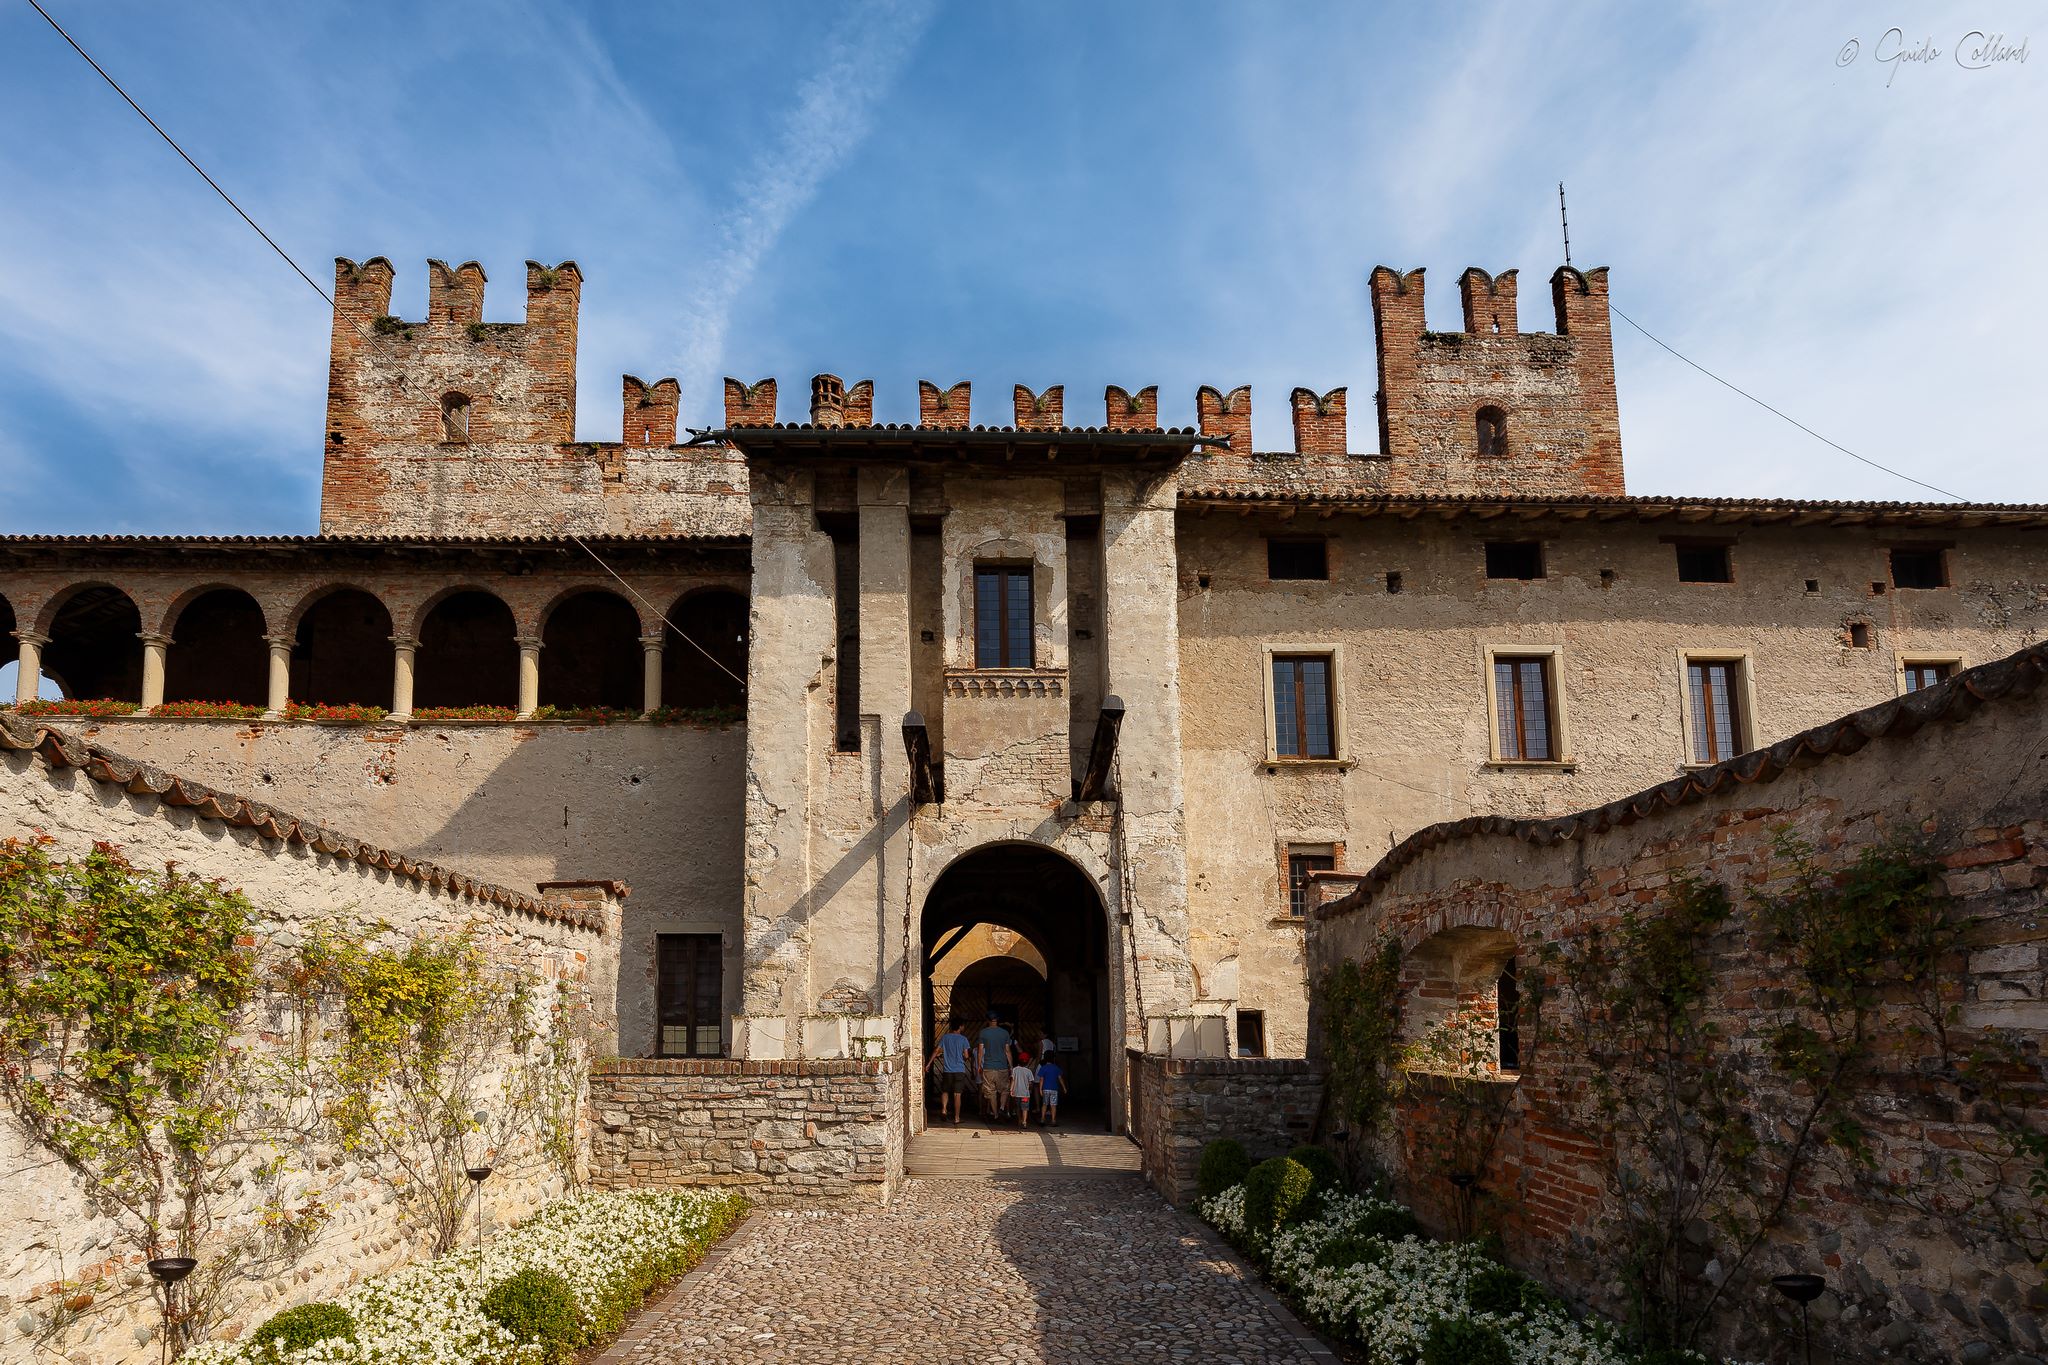 Castello Malpaga a Bergamo